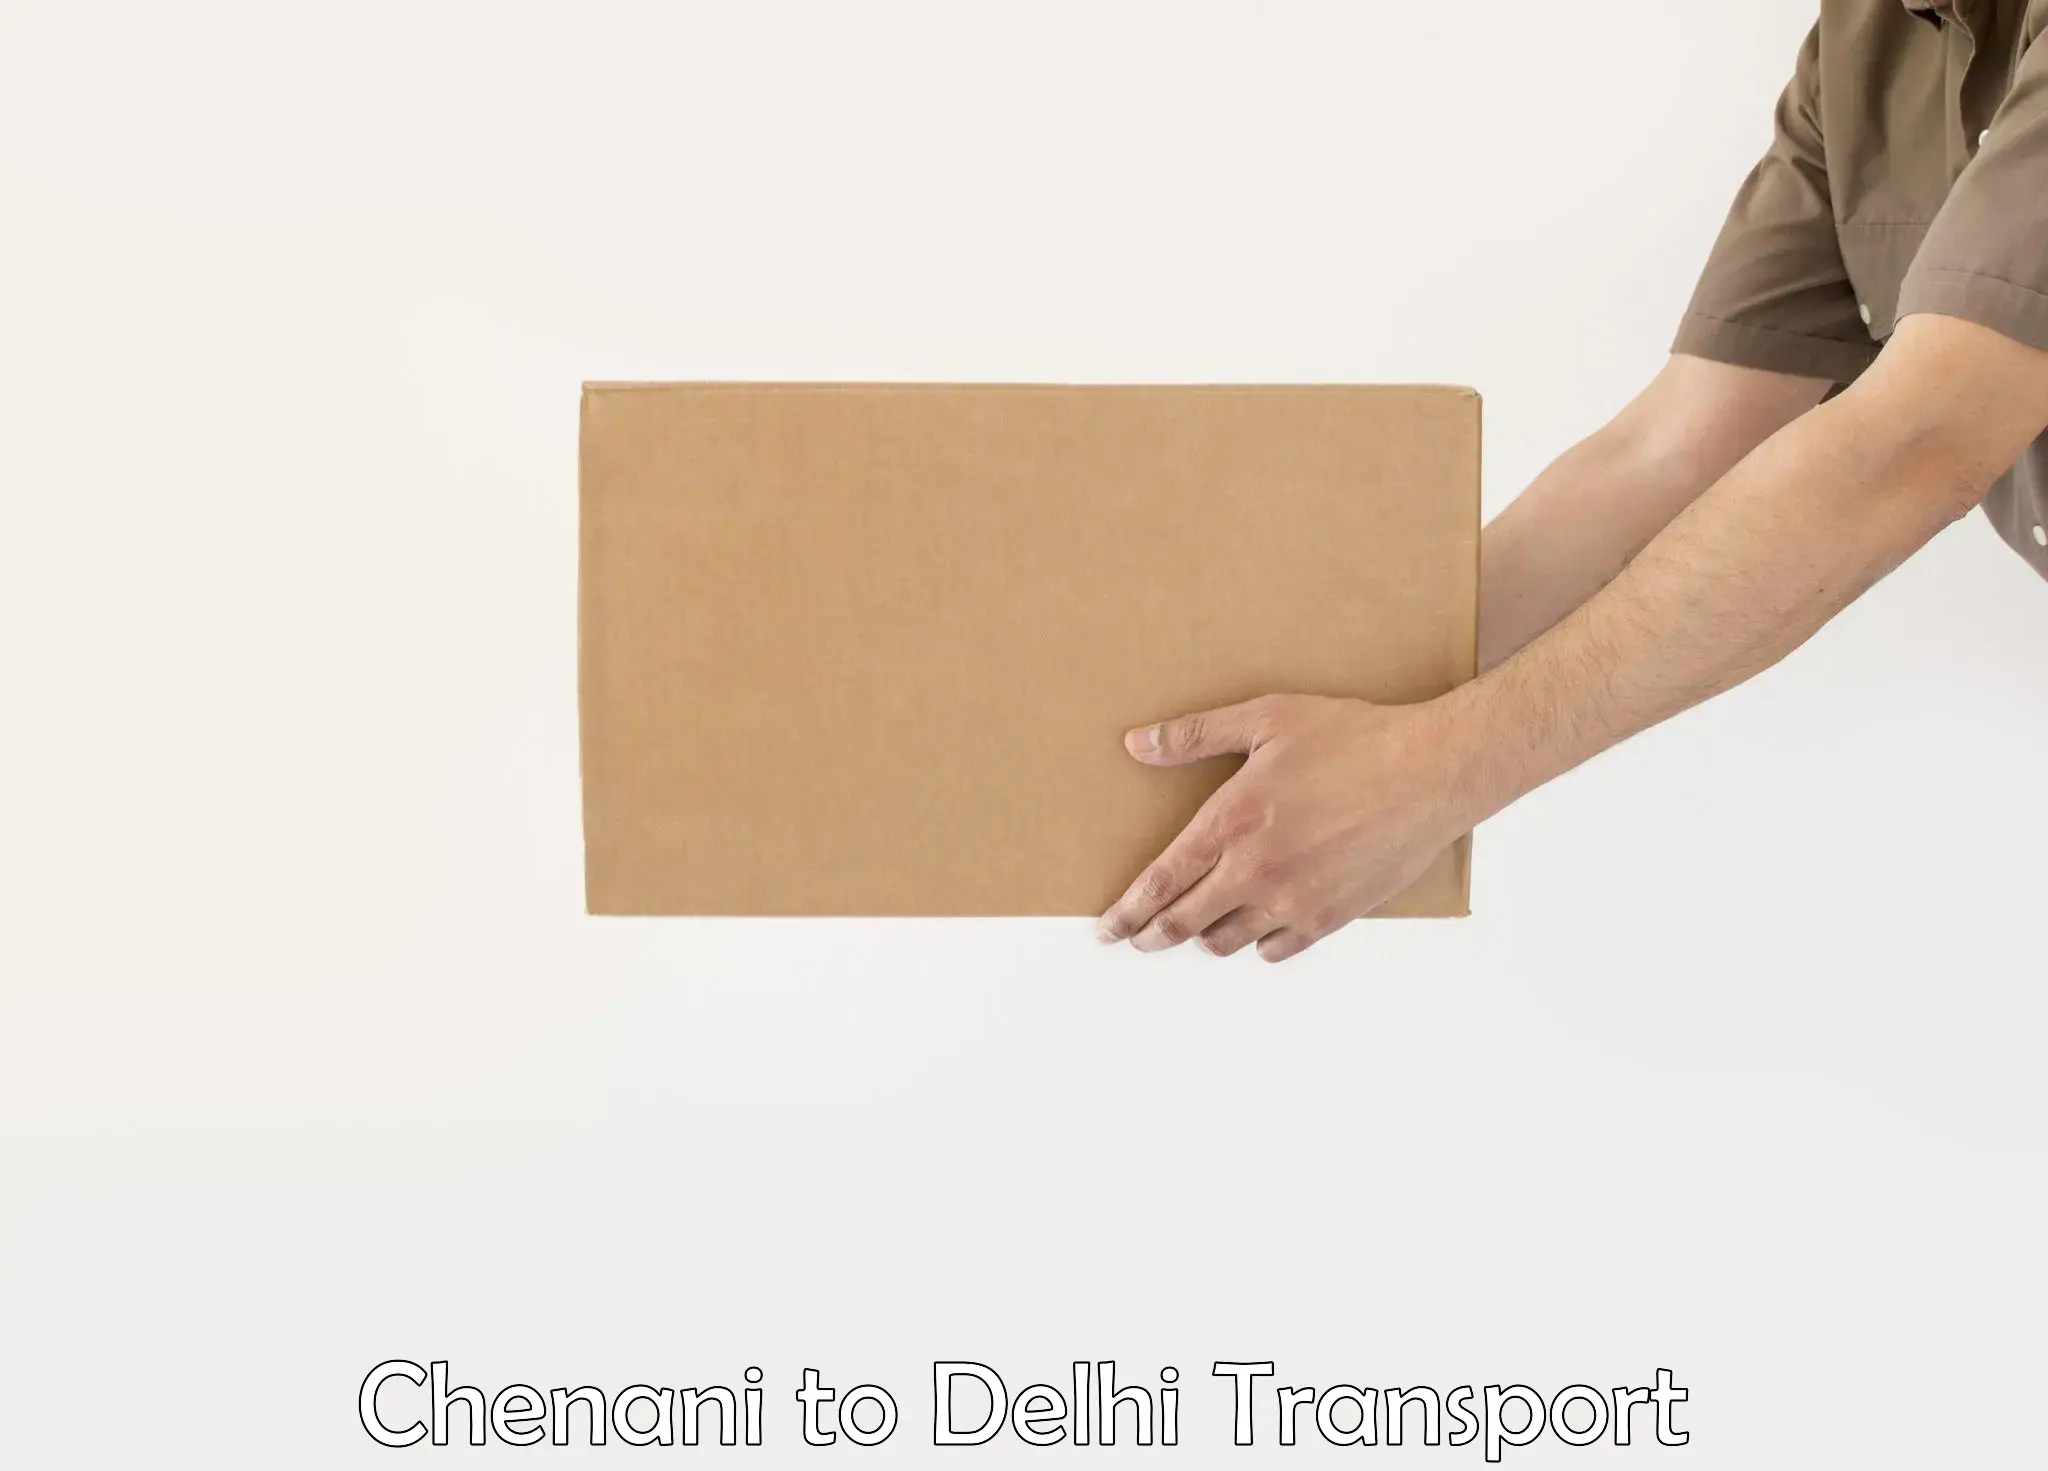 Goods delivery service Chenani to Kalkaji